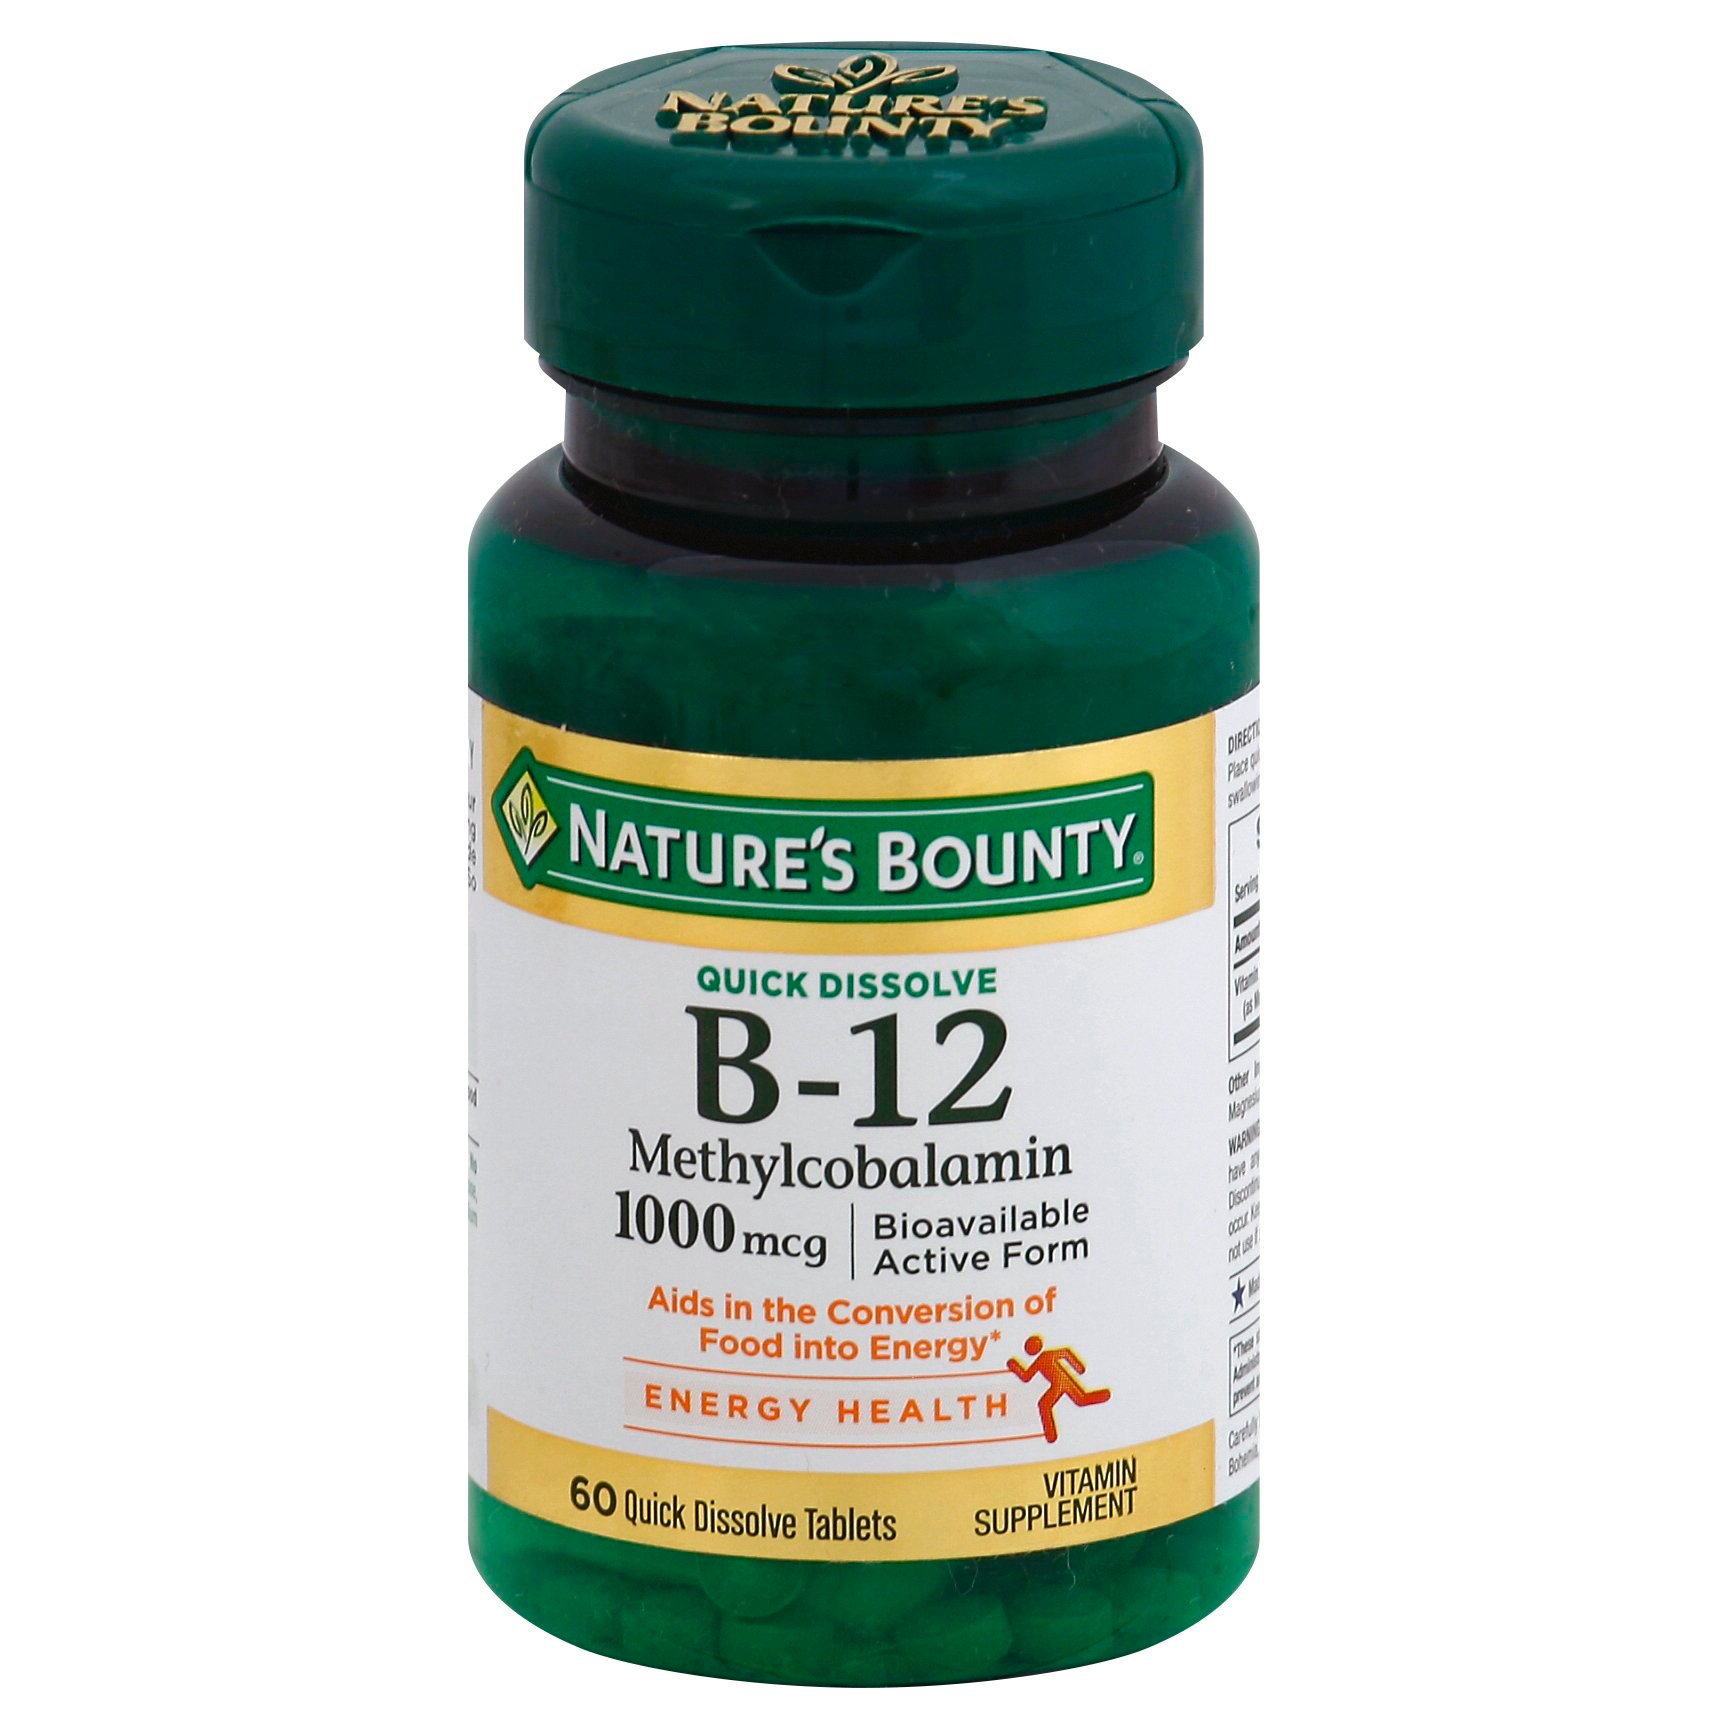 Nature's Bounty Methylcobalamin Vitmain B-12 1000 mcg Quick Tablets - Shop Vitamins Supplements at H-E-B